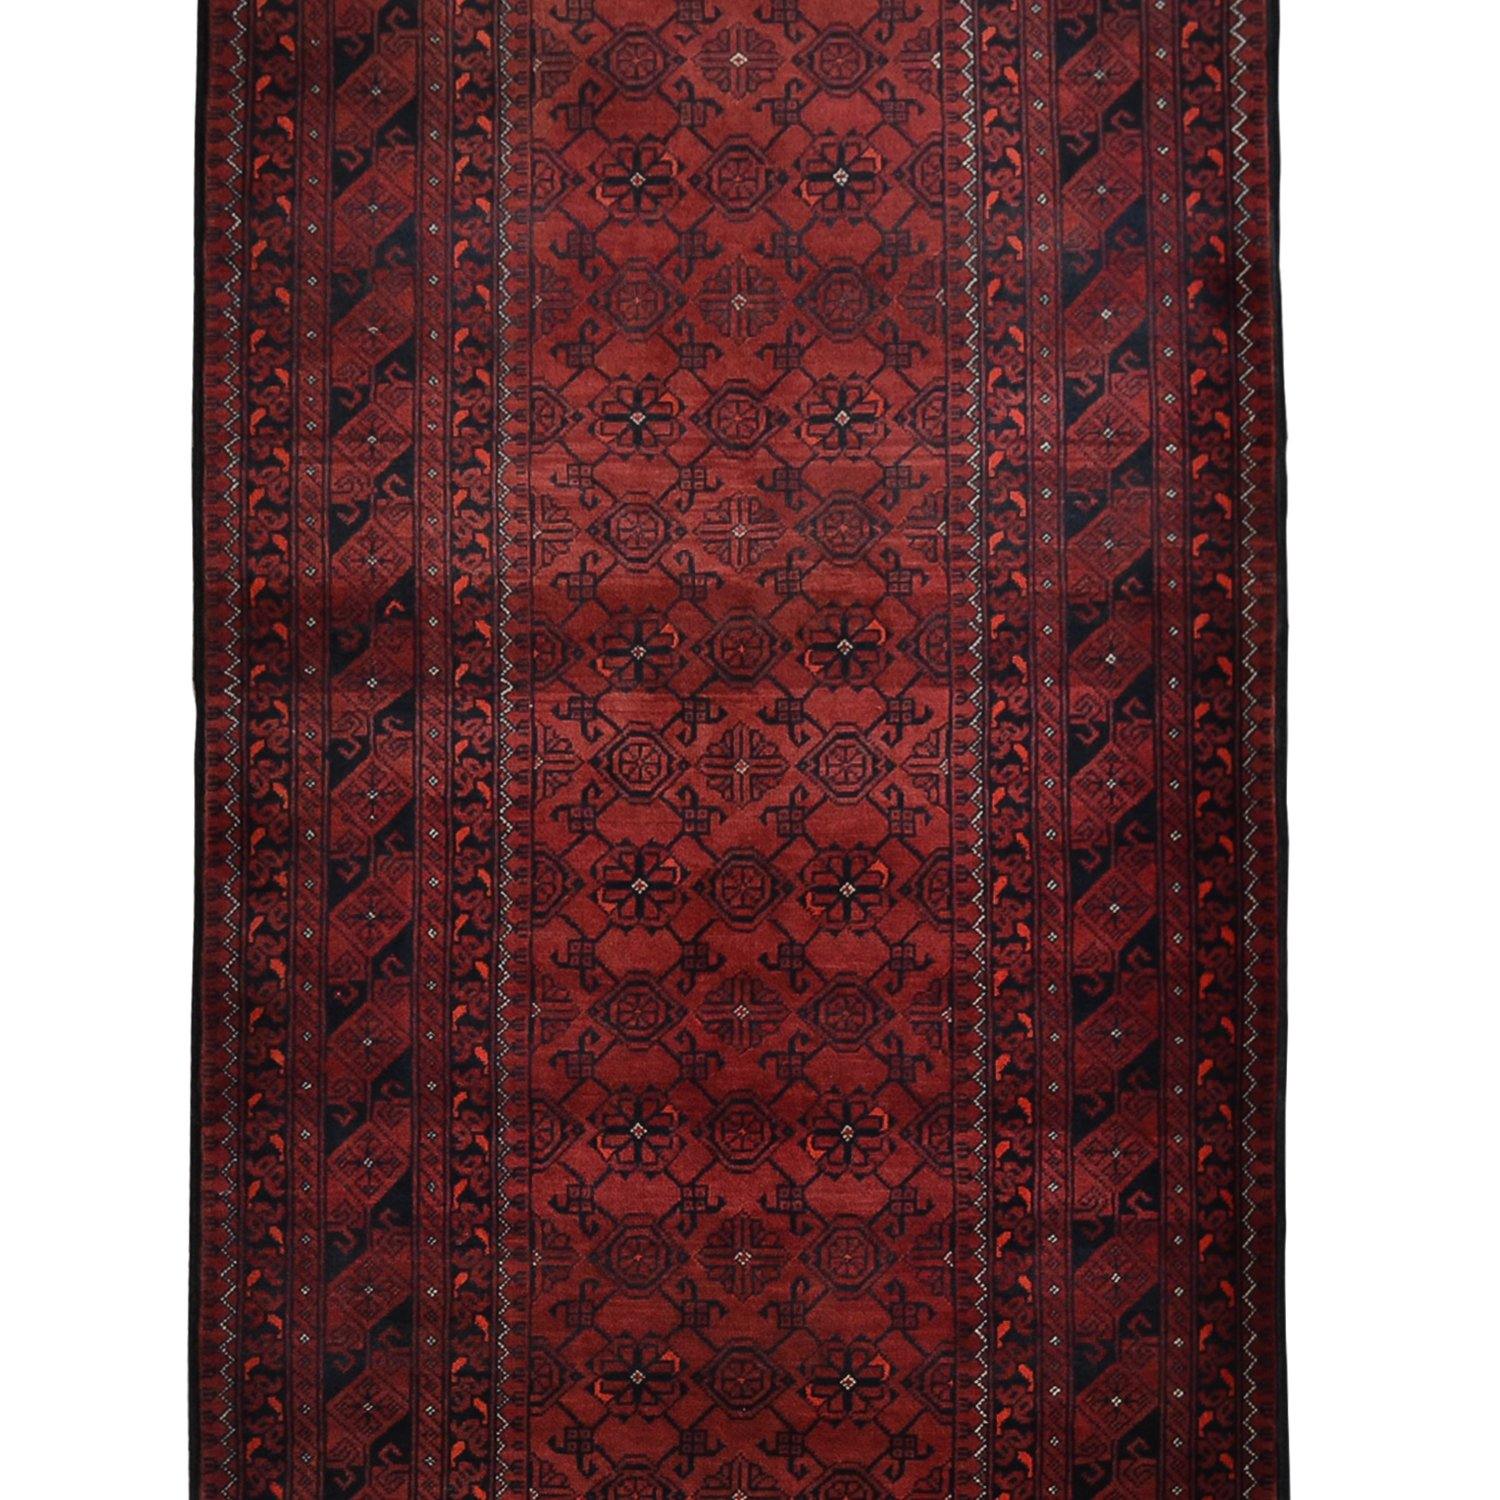 Fine Hand-knotted 100% Wool Tribal Turkmen Hallway Runner 86cm x 383cm